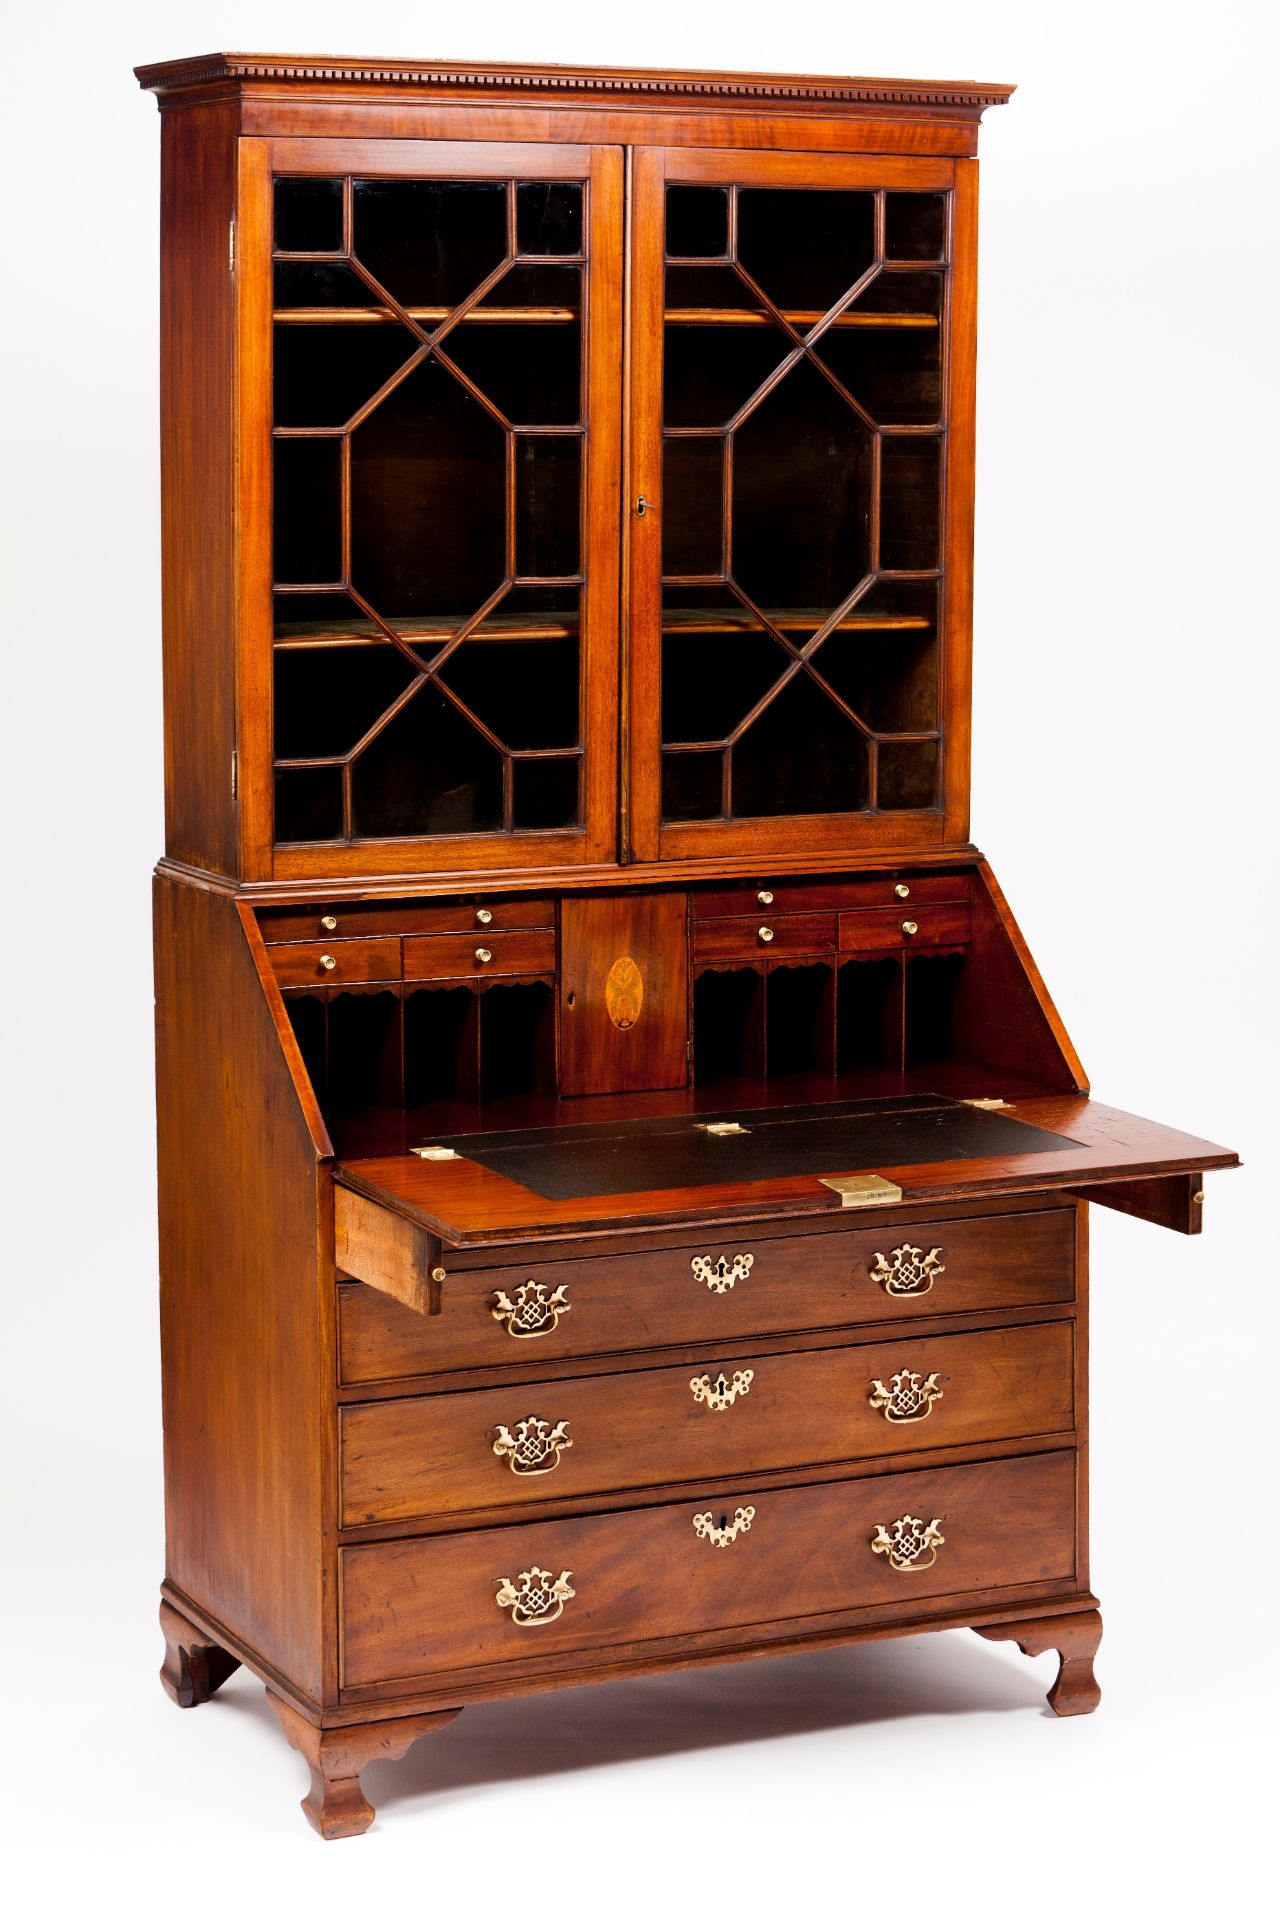 A George III bureau bookcase - Image 2 of 2